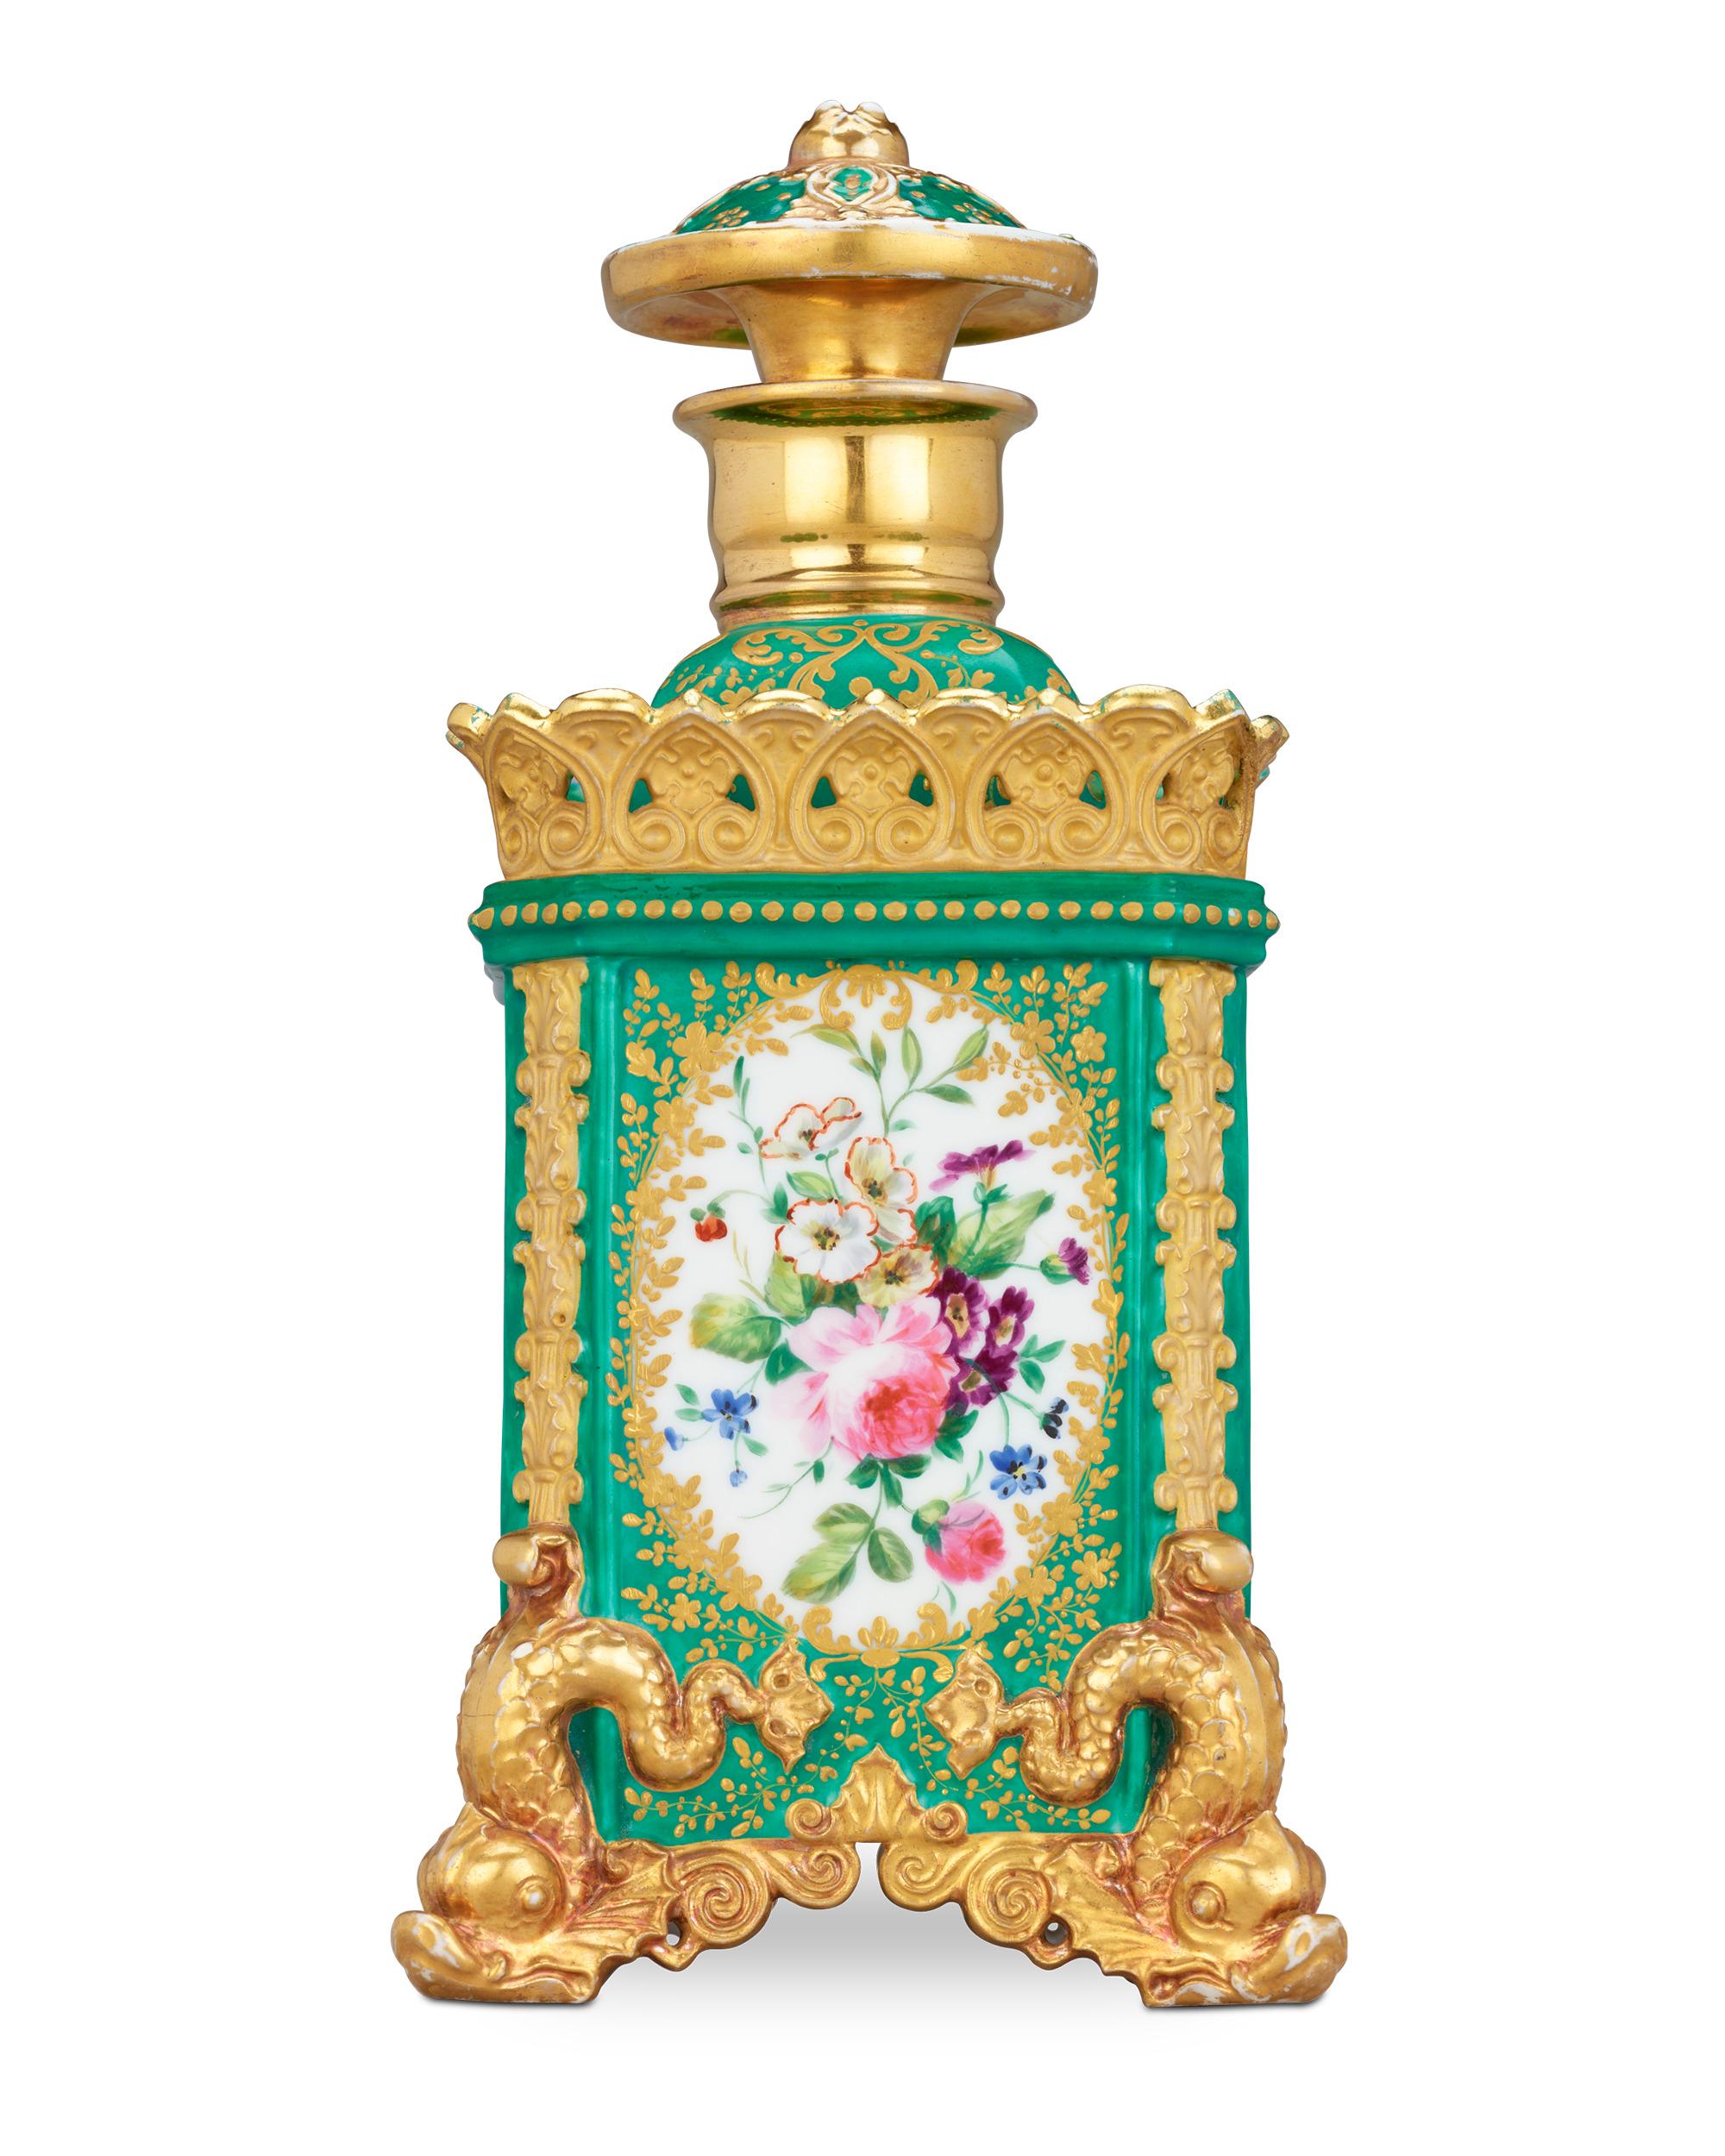 Un motif floral luxuriant et des couleurs riches caractérisent ce rare flacon de parfum de Jacob Petit, célèbre céramiste et l'un des plus importants producteurs d'objets ornementaux rococo du XIXe siècle. Sa forme carrée unique est décorée de